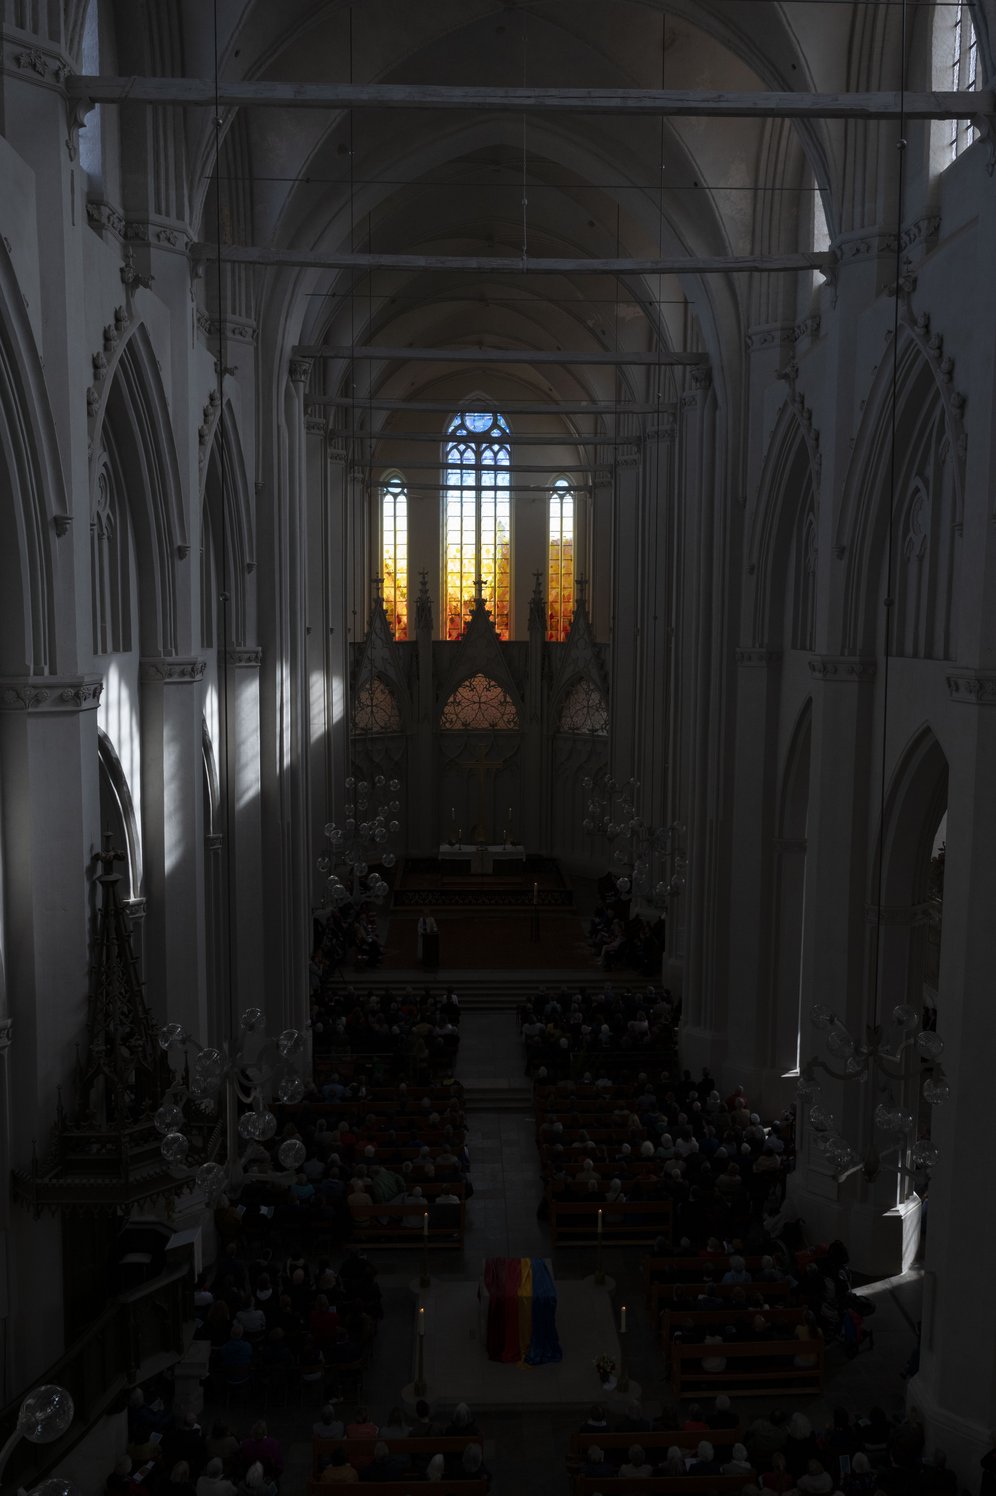 Domfenster von Olafur Eliasson: Blick in den dunklen Kircheninnenraum, am Ende die hellen farbigen Ostfenster.